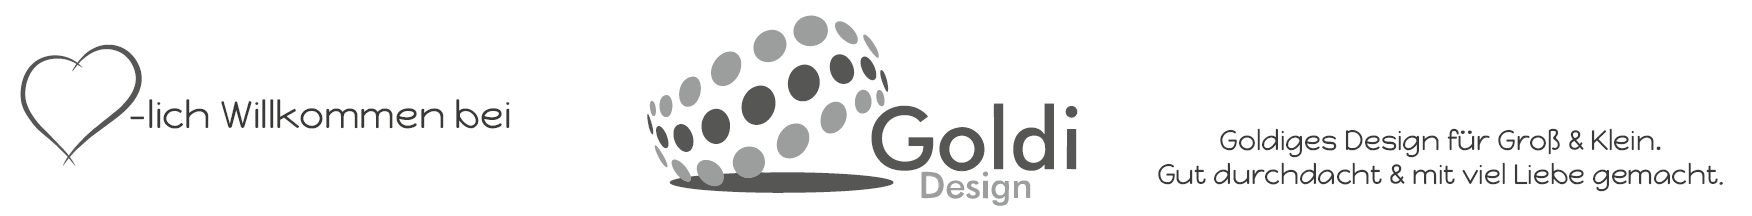 Goldi-Design